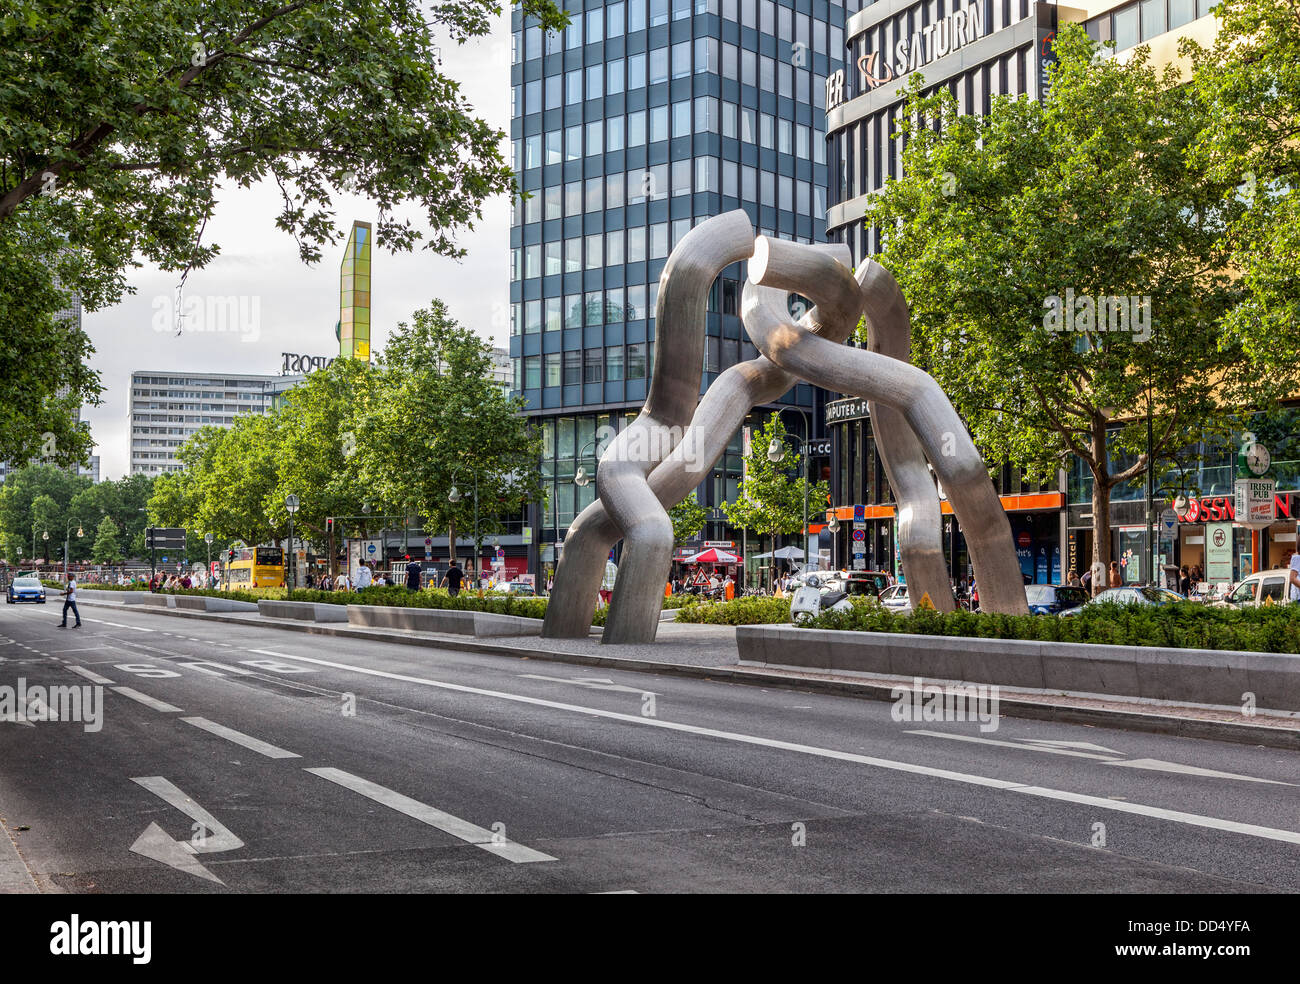 Travaux d'art public - les liens cassés de la sculpture représente la chaîne de division entre l'Est et l'ouest de Berlin, Berlin Tauentzienstrasse sur Banque D'Images